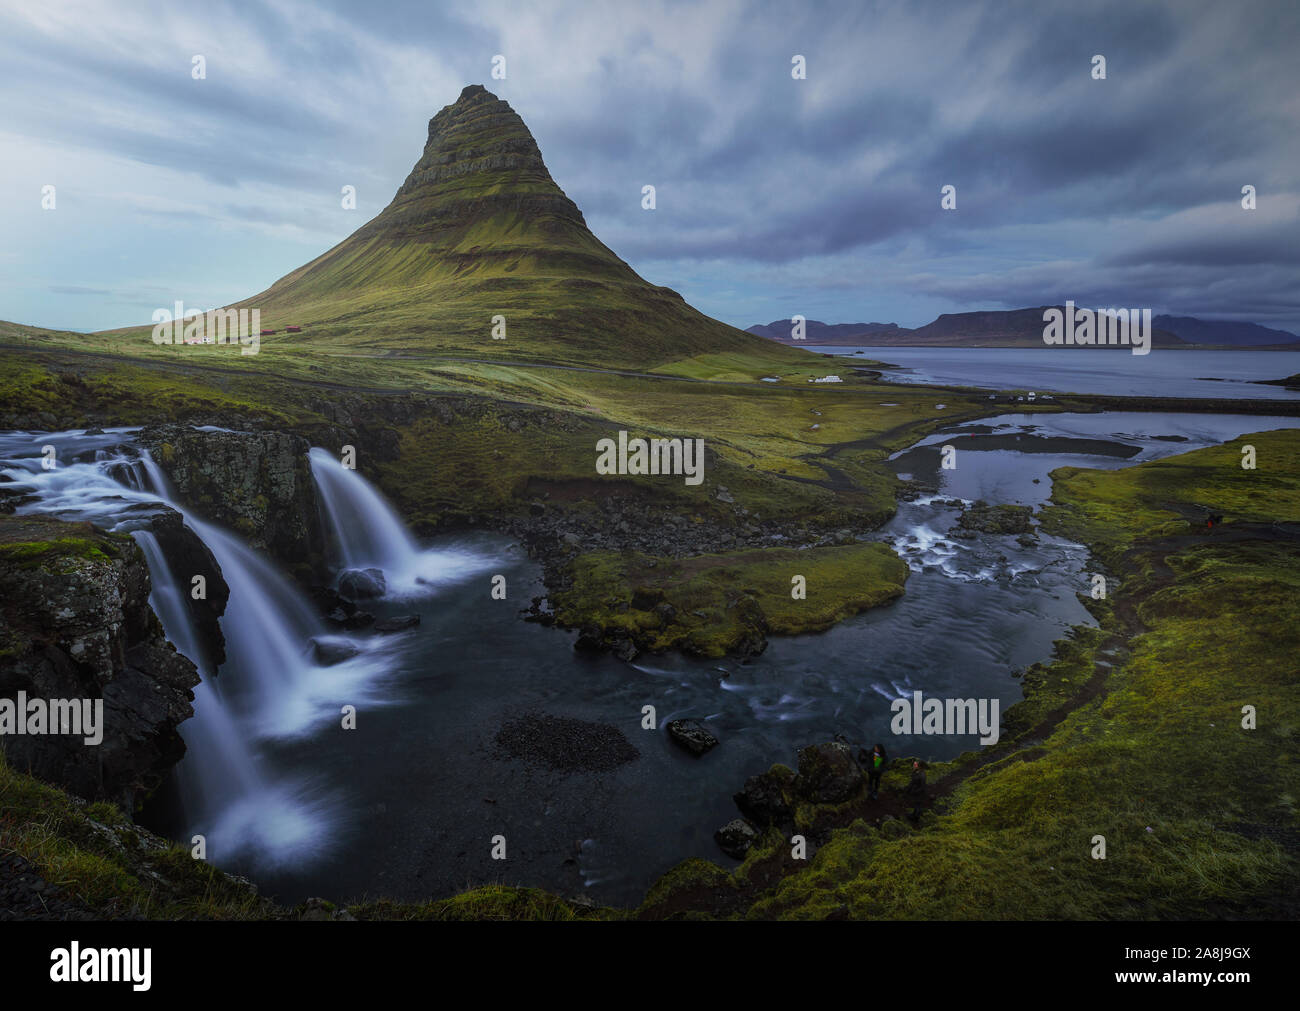 Kirkjufell, der berühmteste Berg Islands, Pfeil, Spiel der Throne Landschaft. Wasserfall, Fluss und eine Lagune, in der Nähe. Grüne Gras. Bewölkten Tag. Stockfoto